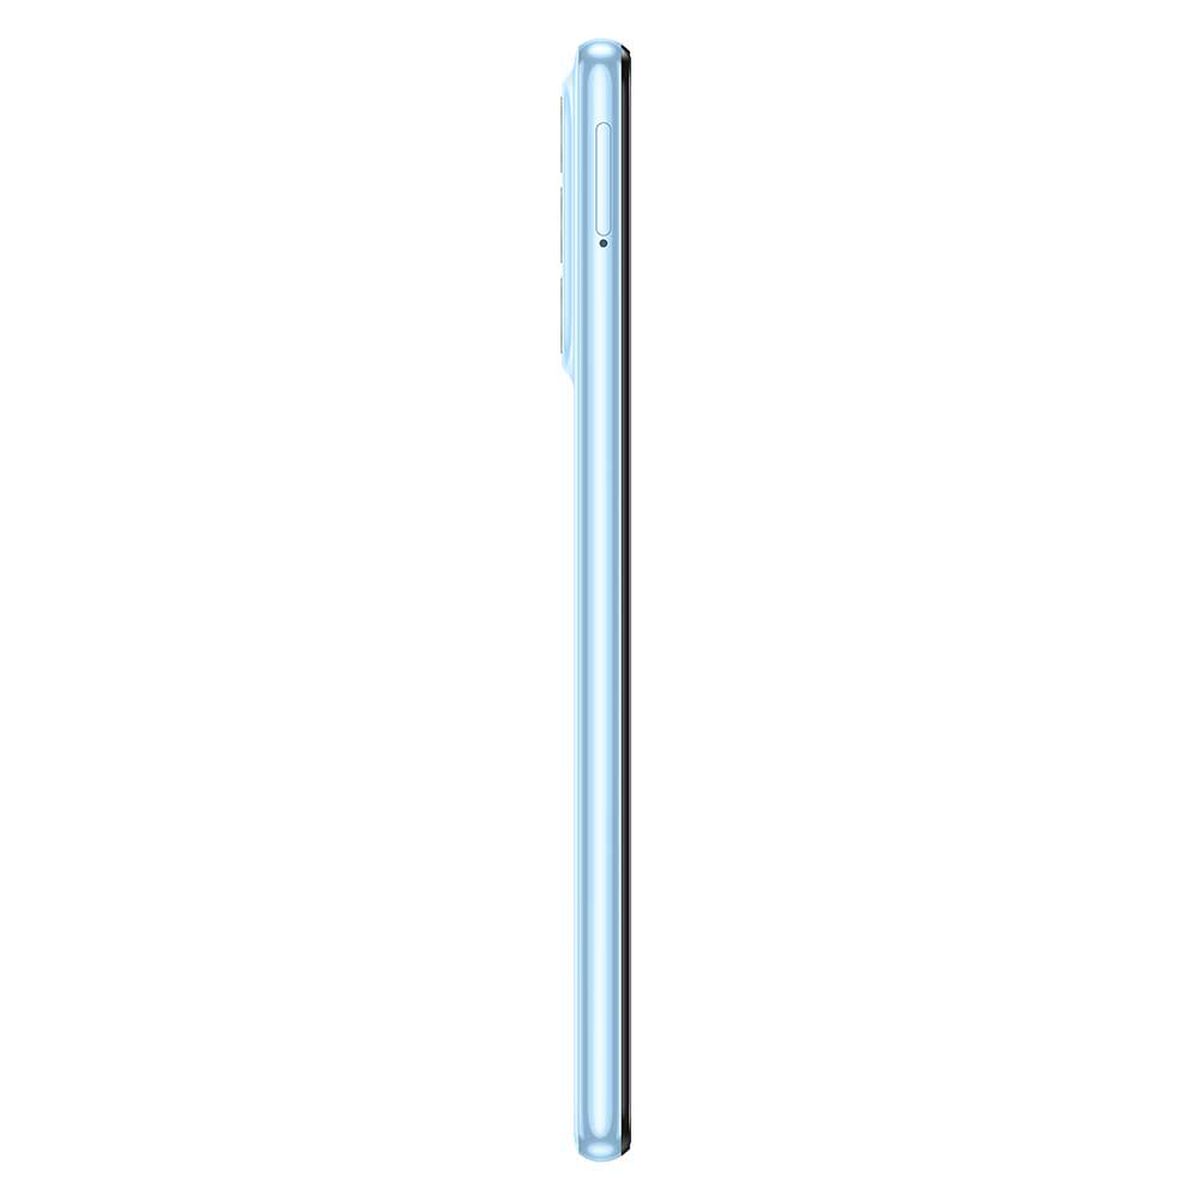 Celular Samsung Galaxy A23 128GB 6,6'' Blue Liberado